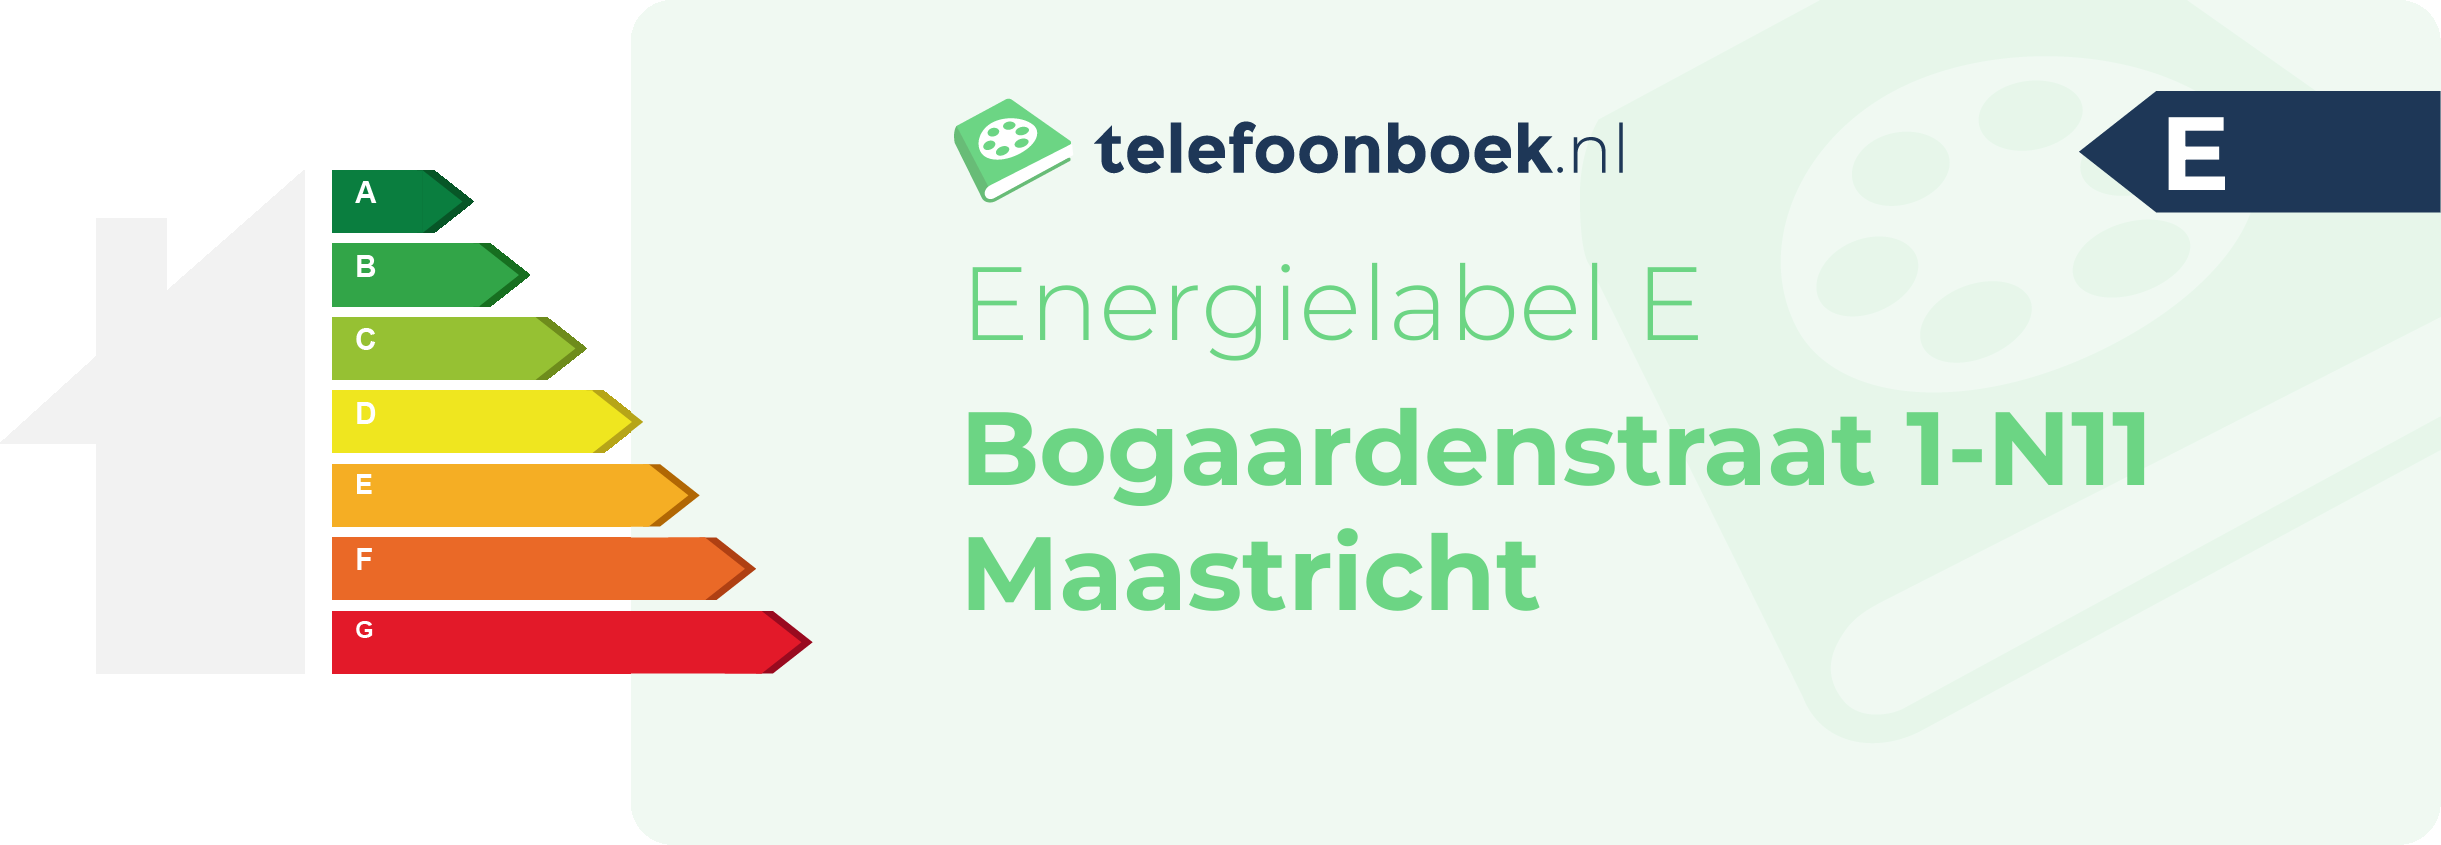 Energielabel Bogaardenstraat 1-N11 Maastricht